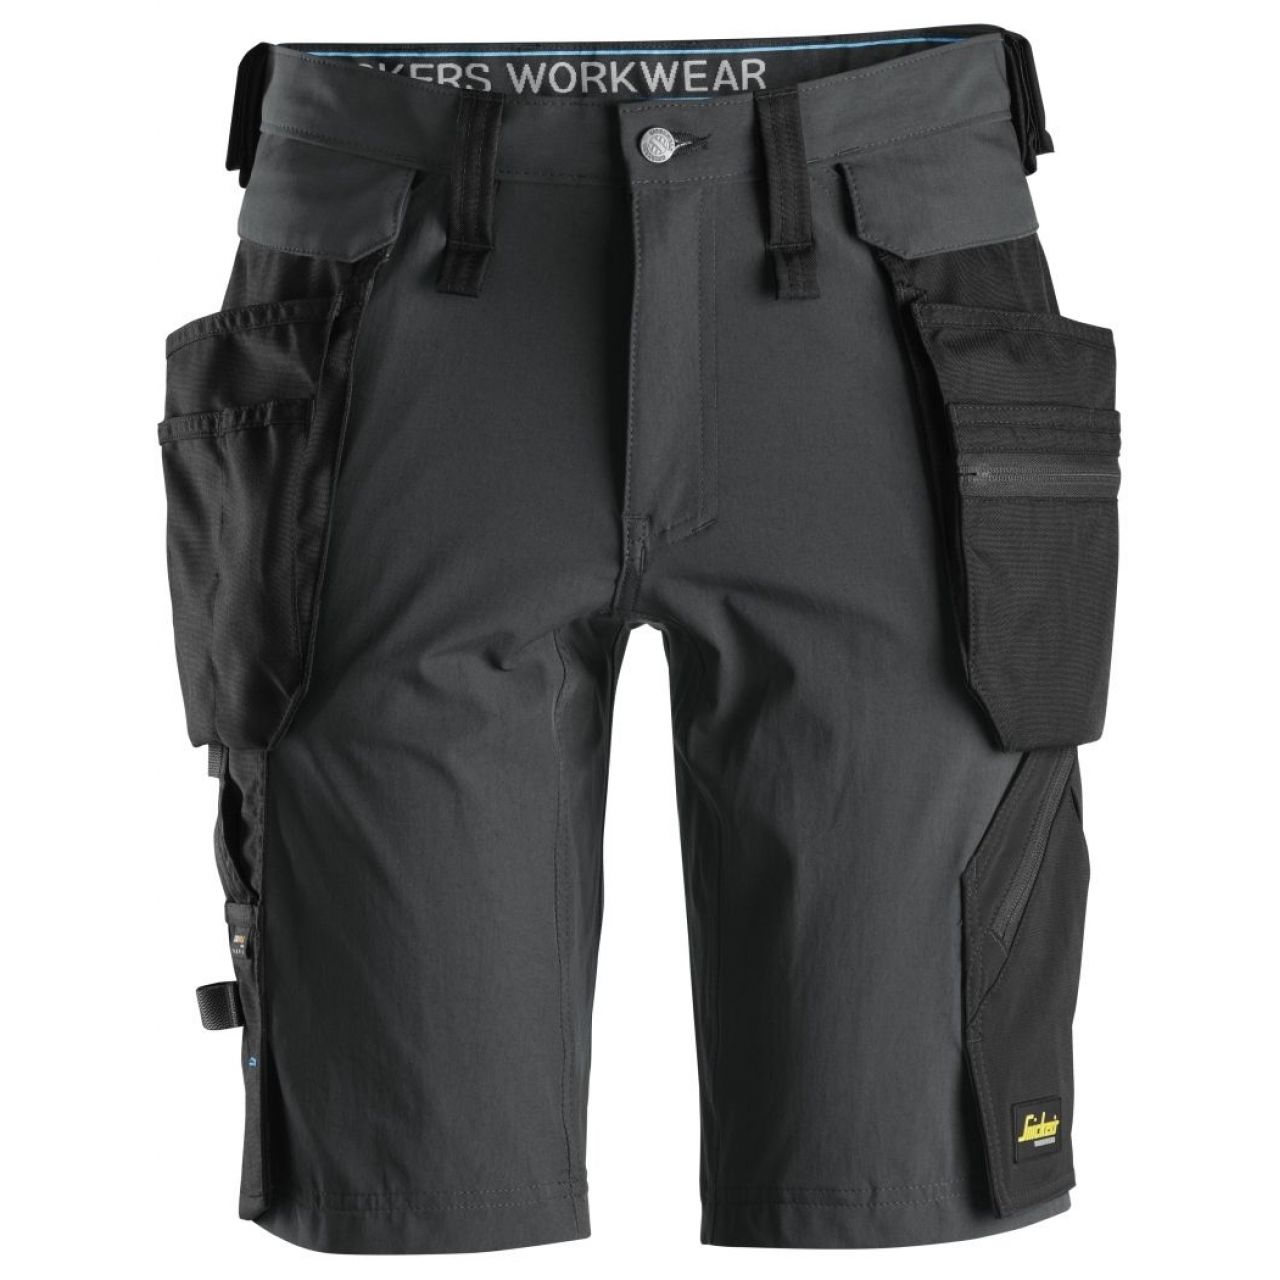 Pantalon corto + bolsillos flotantes desmontables LiteWork gris acero-negro talla 044